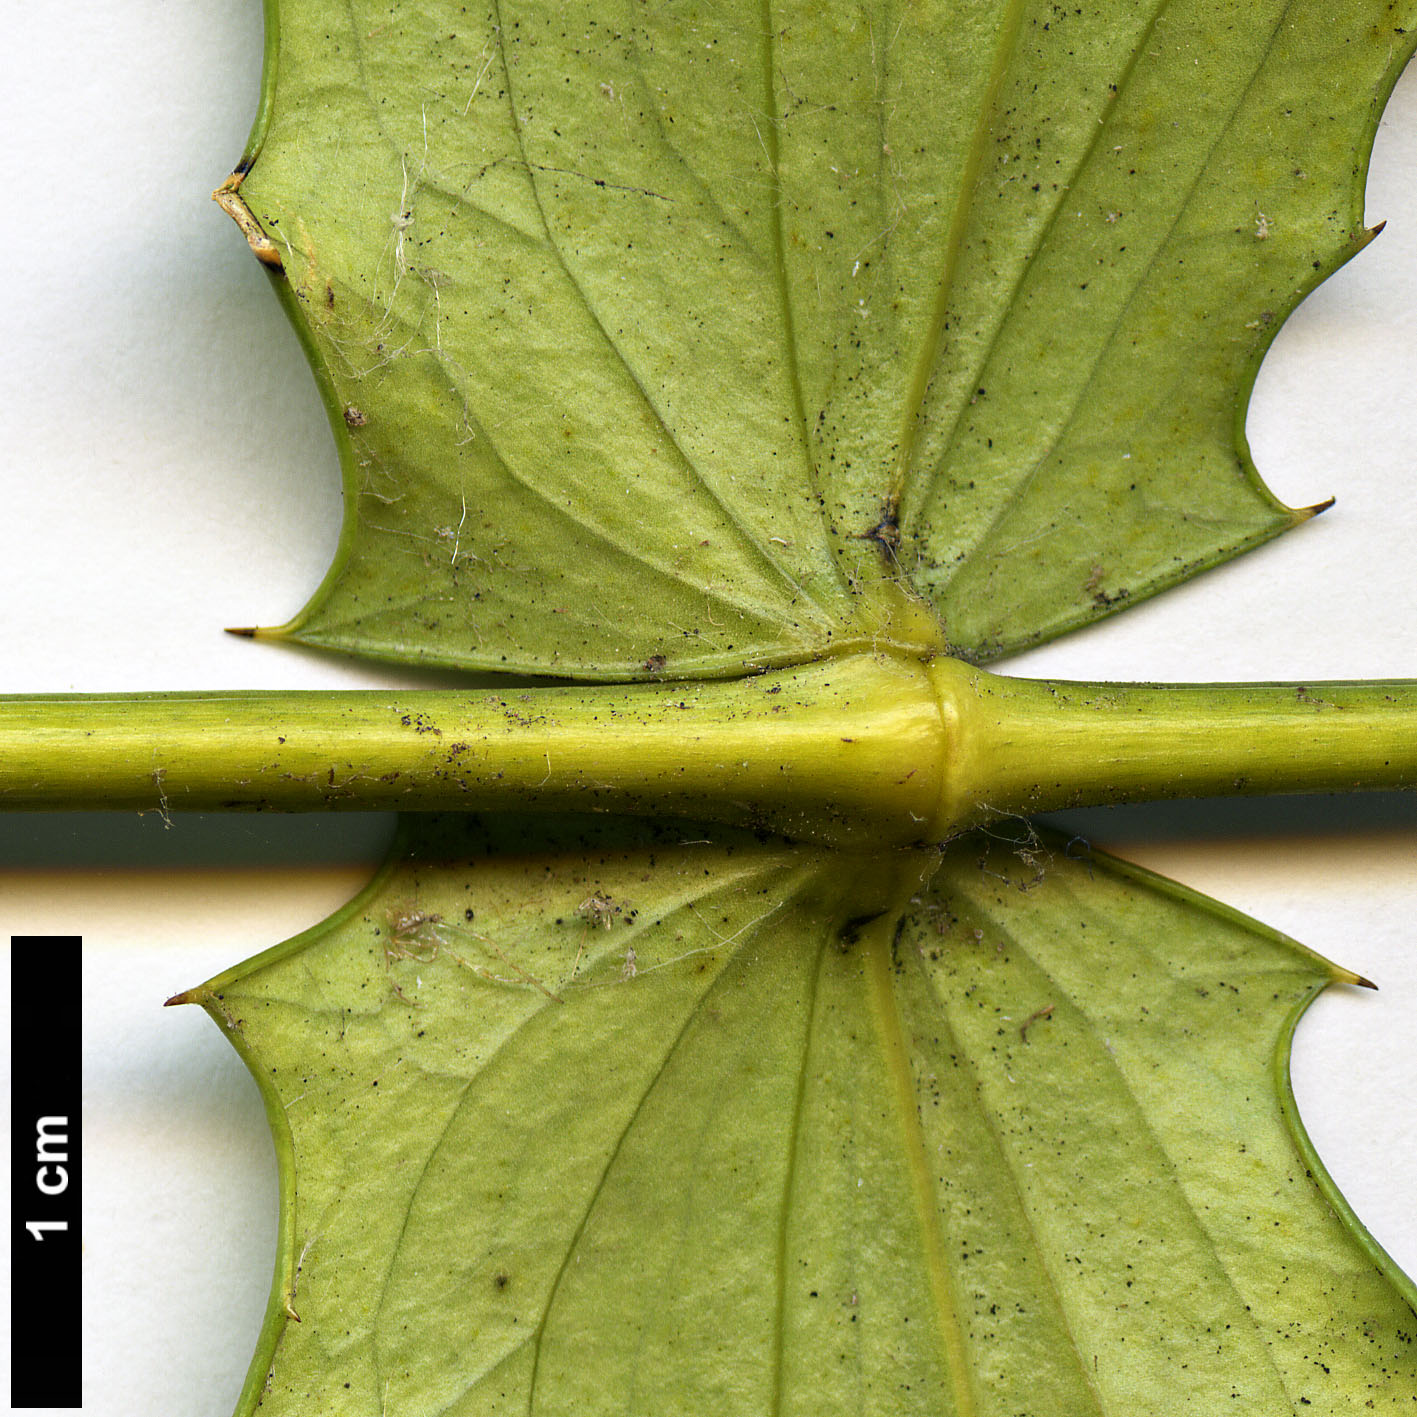 High resolution image: Family: Berberidaceae - Genus: Mahonia - Taxon: oiwakensis